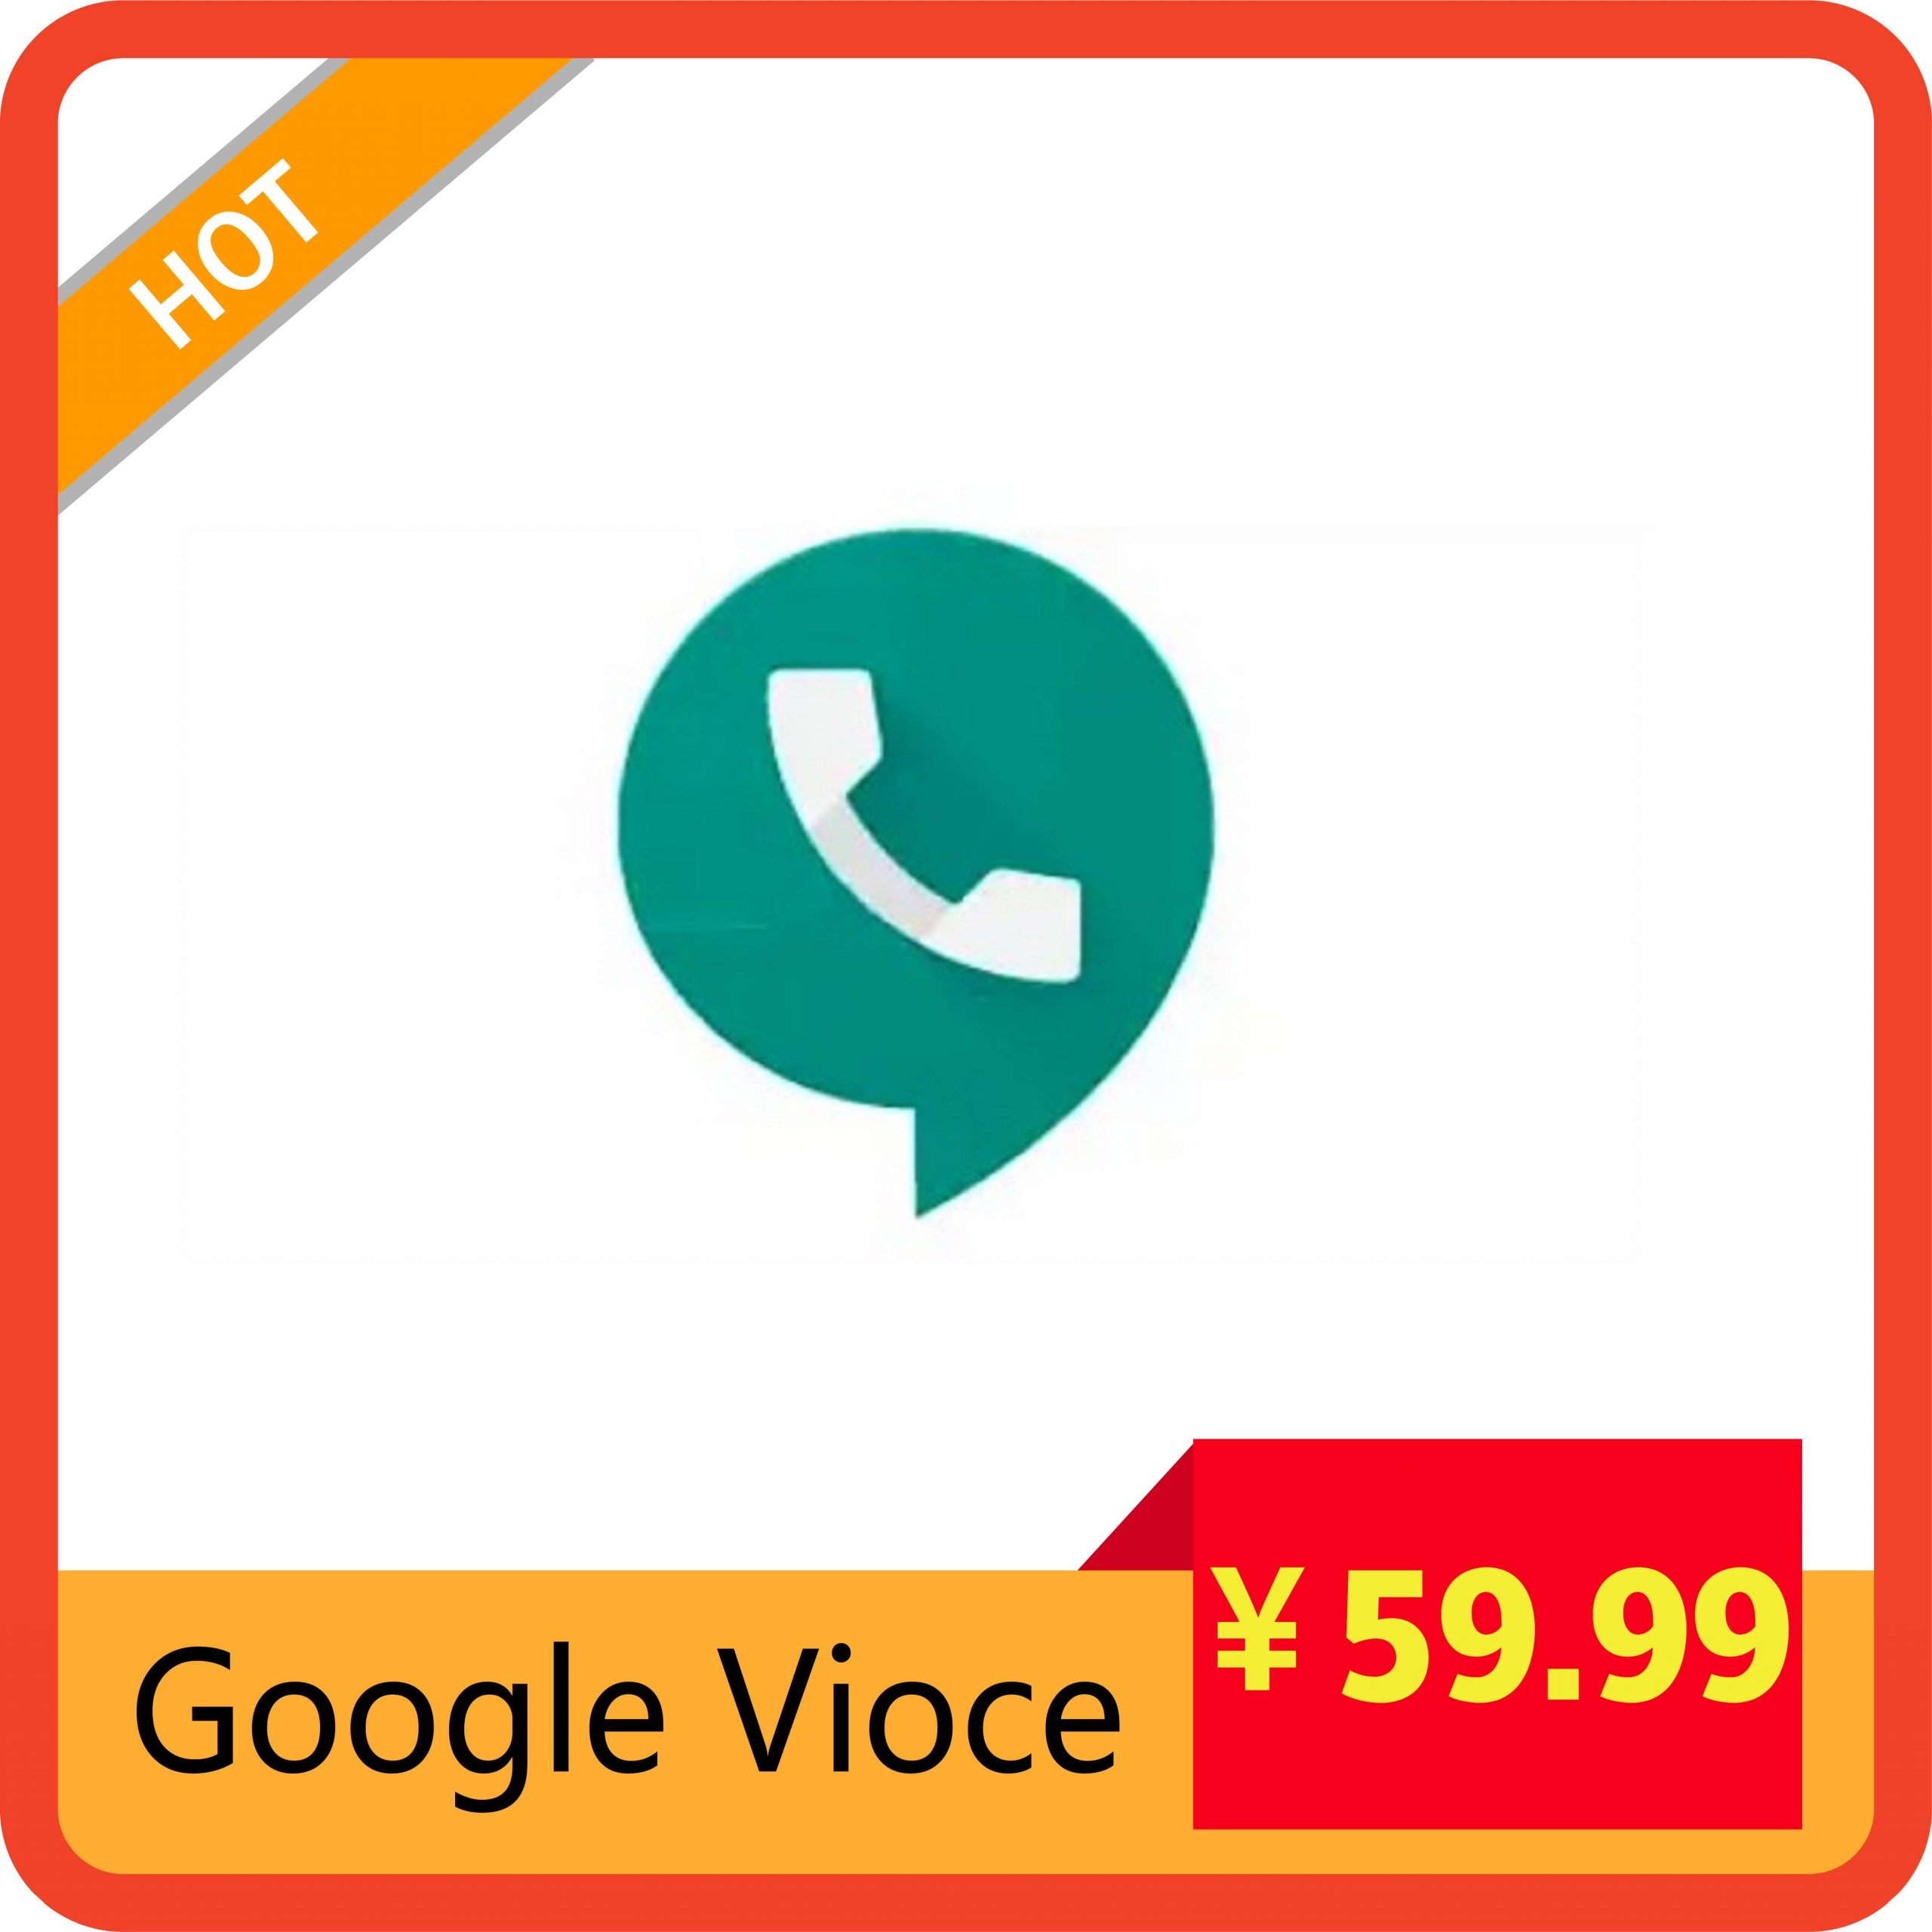 Google Vioce账号购买/GV账号(自带Gmail账号)-sorryios